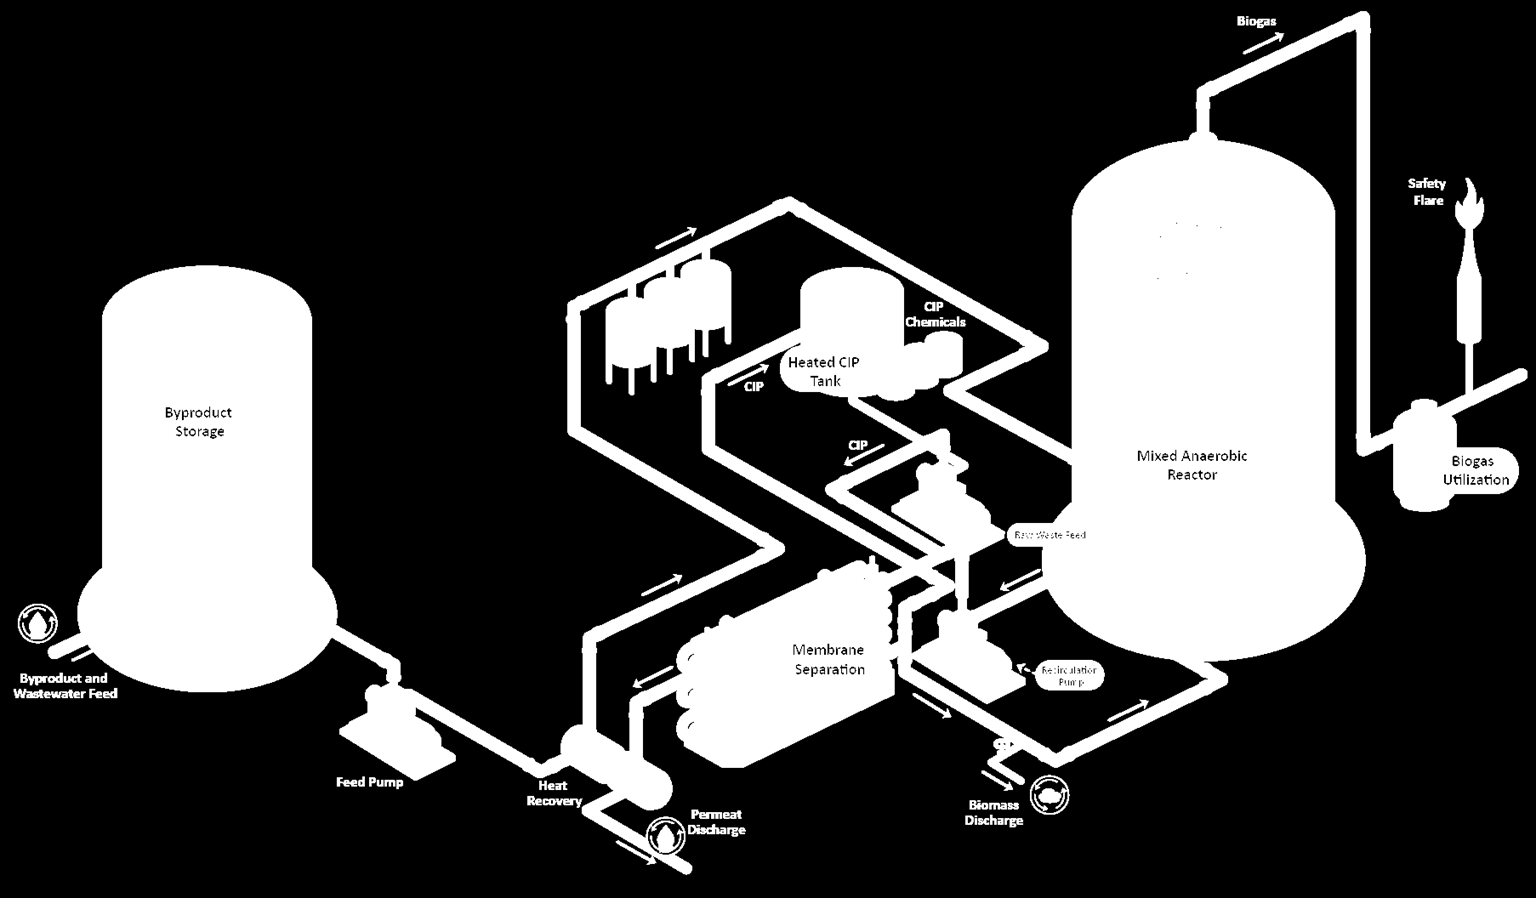 Proces alternativ Memthane Konditionering af koncentreret spildevand Cleaning In Place (CIP) Spildevandet ledes til den anaerobe reaktor, hvor COD konverteres til metan Biogas fakle CIP system